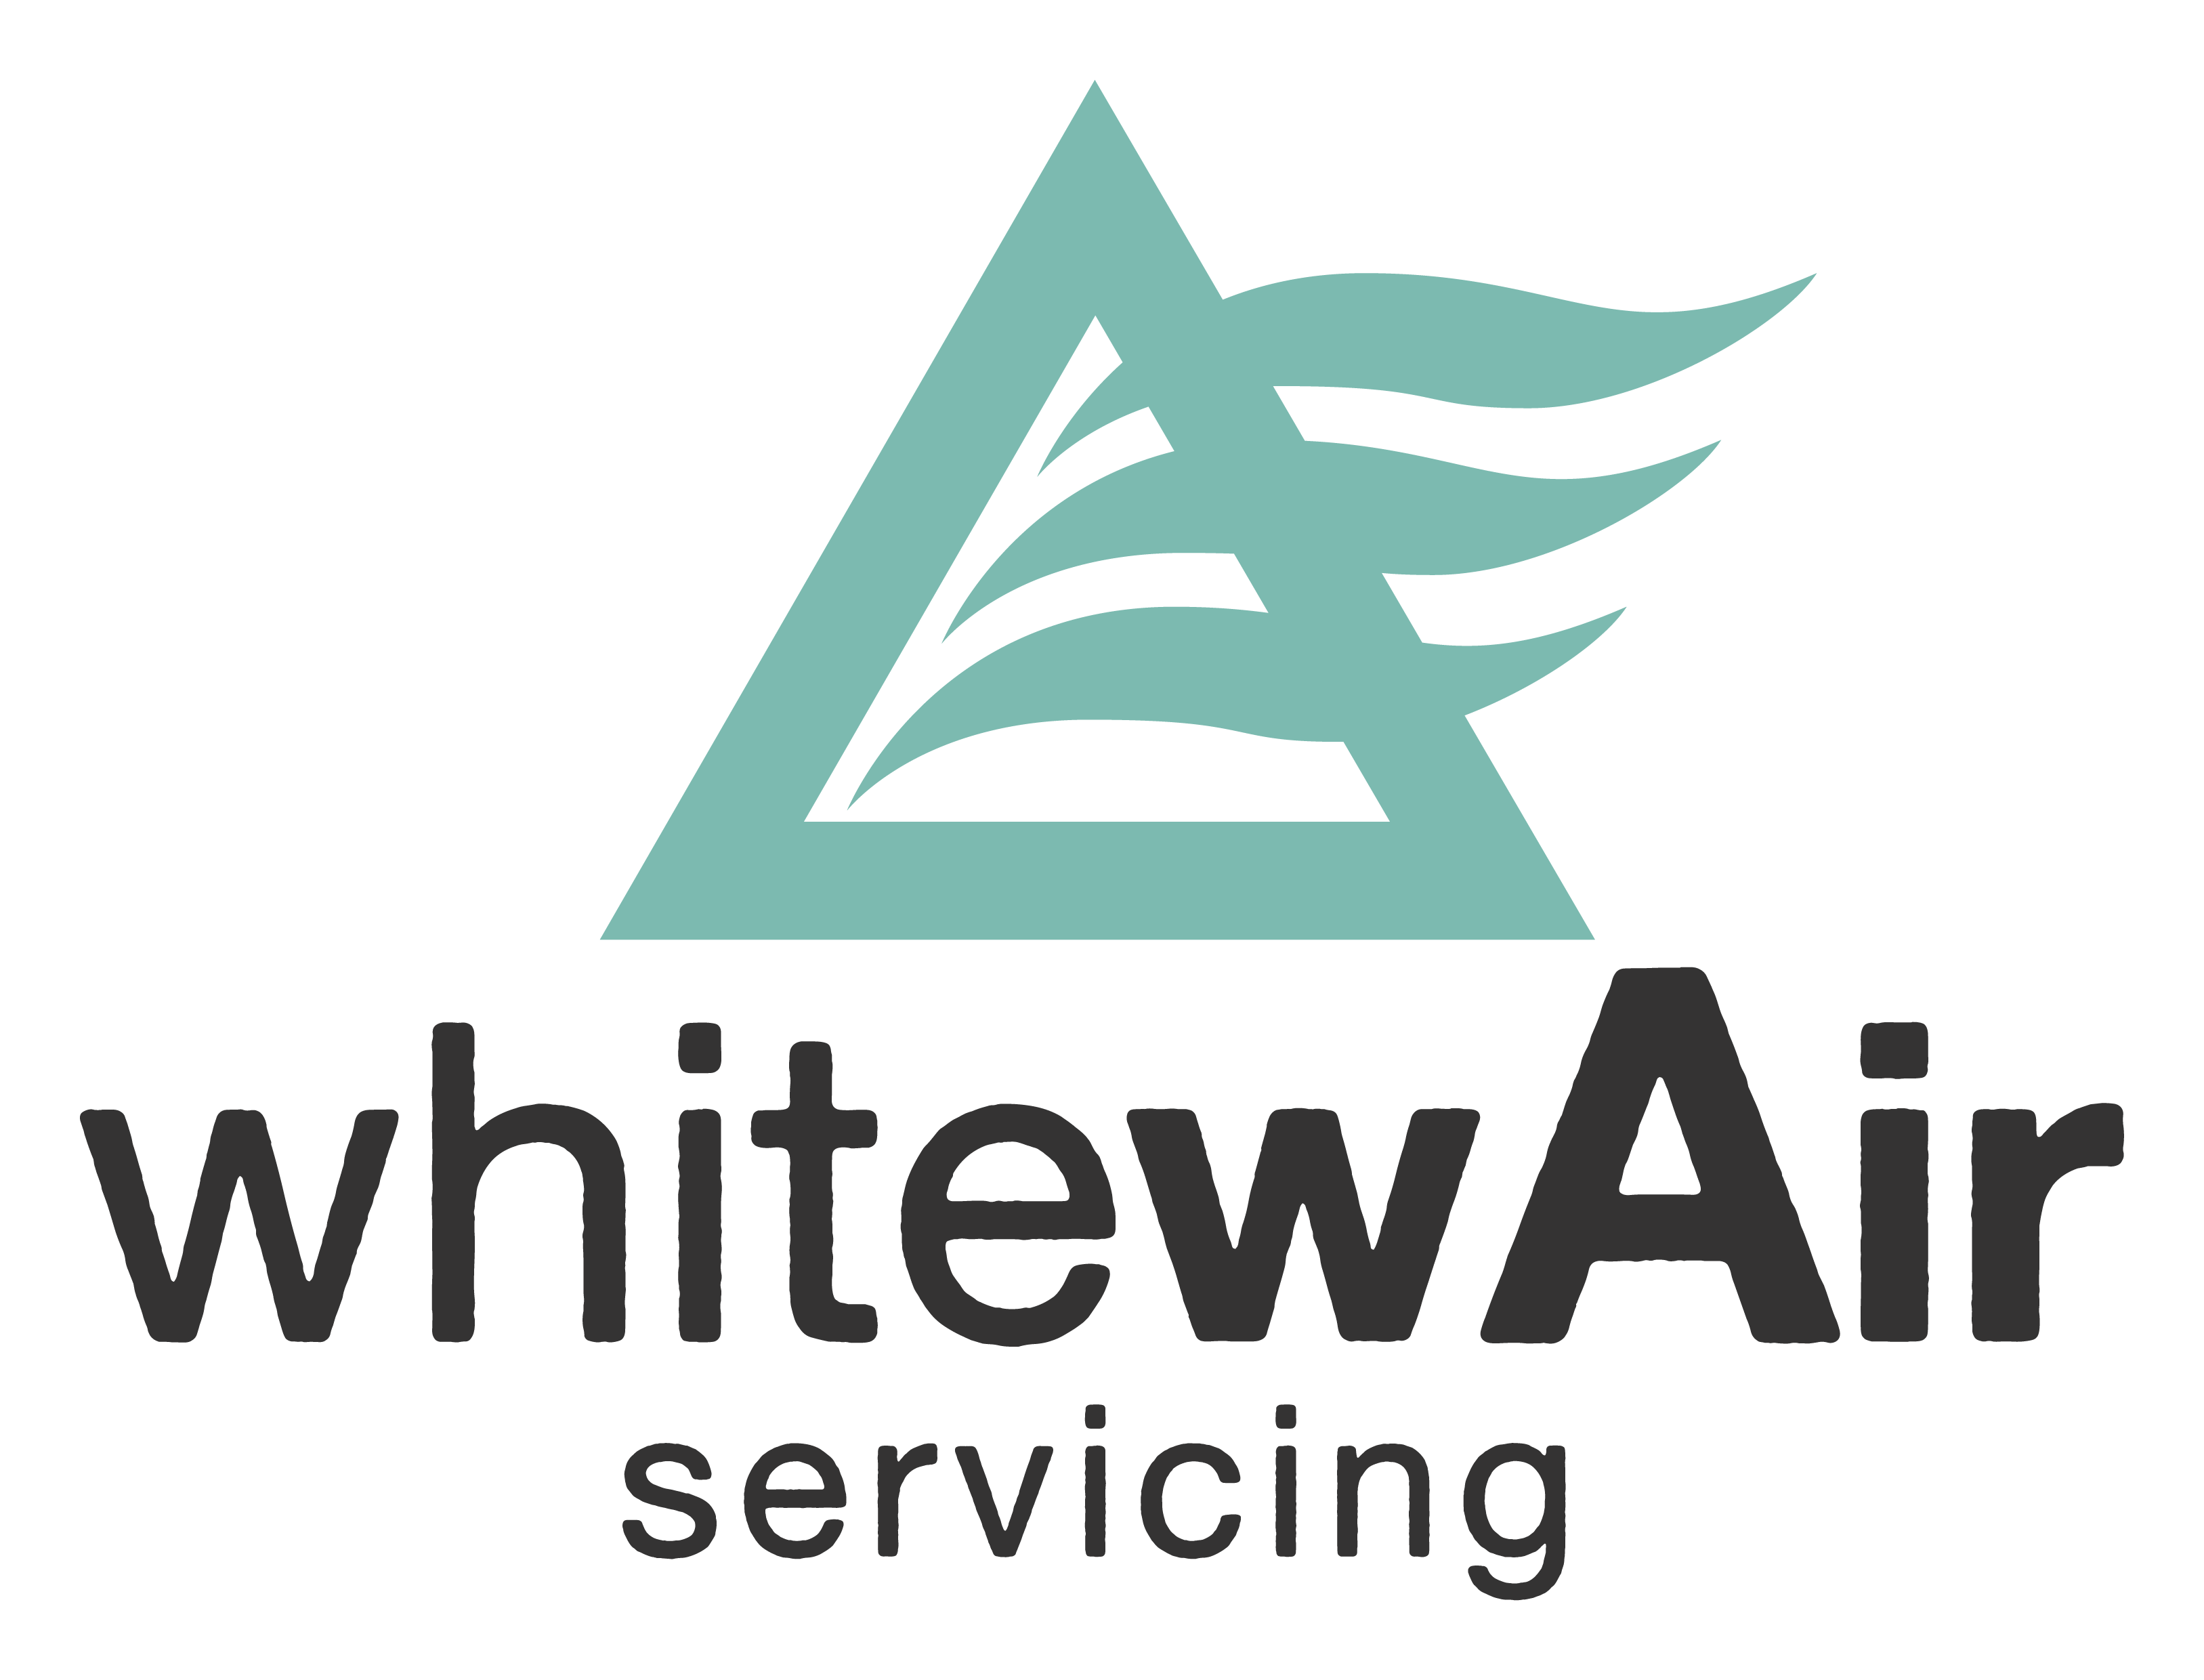 WhitewAir - Website Coming Soon